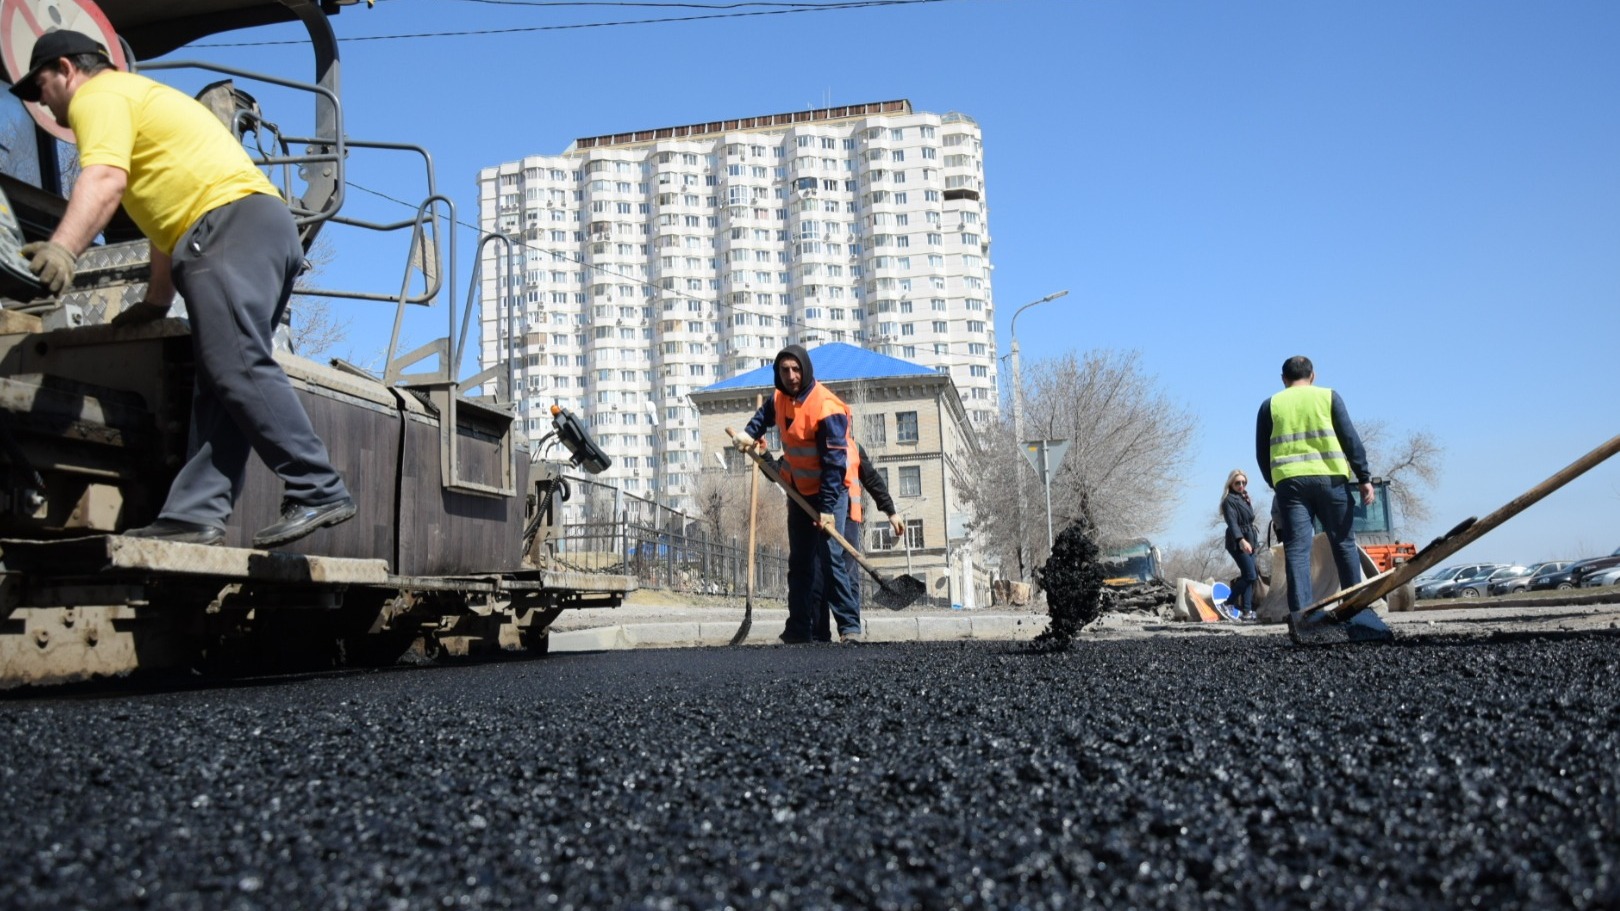 Самые крупные дополнительные субсидии на содержание дорог получат Ижевск и Сарапул